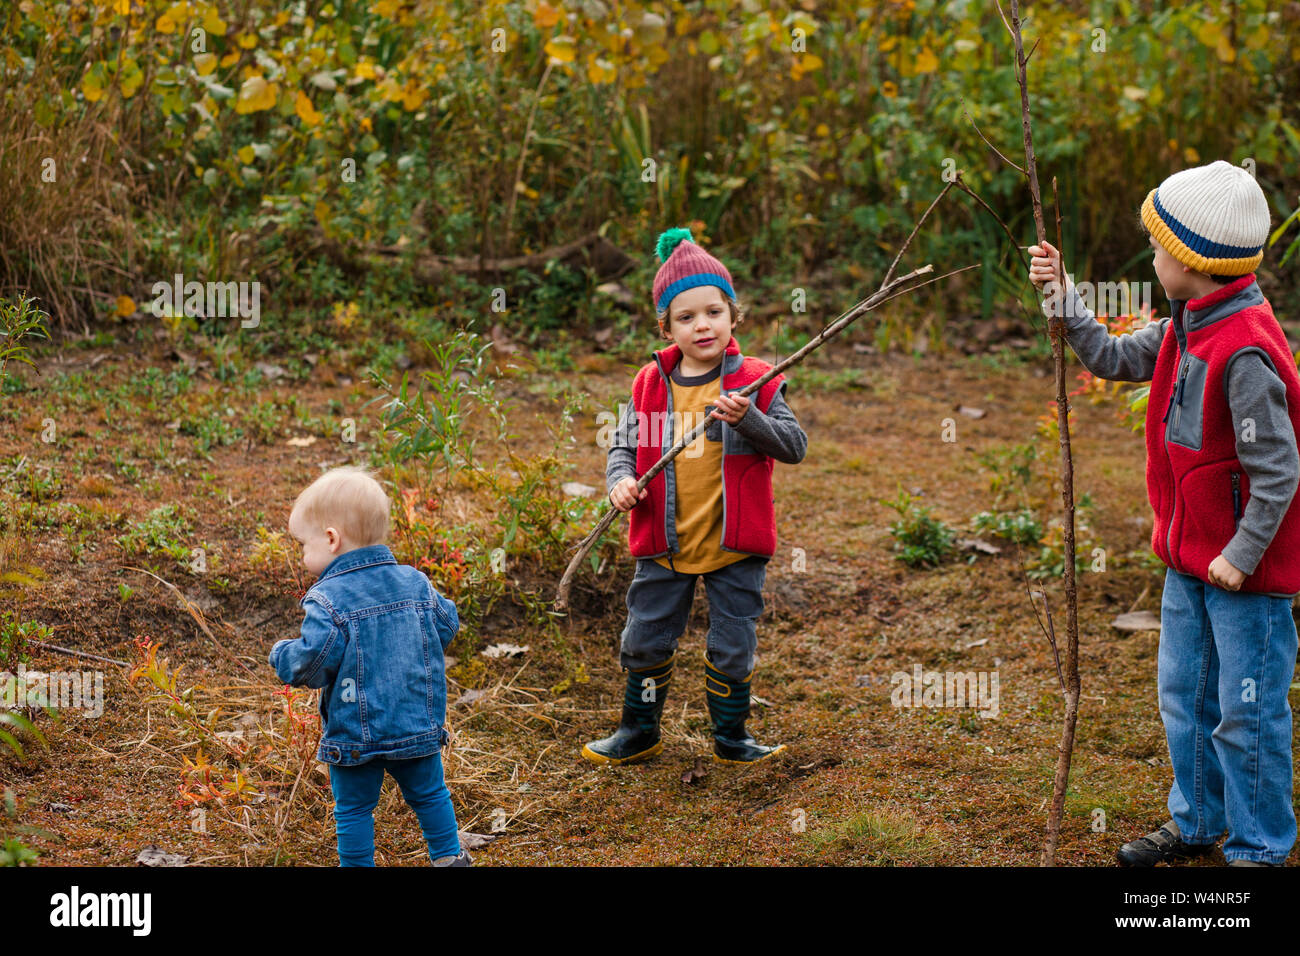 Trois petits garçons jouent ensemble dans une prairie en automne Banque D'Images